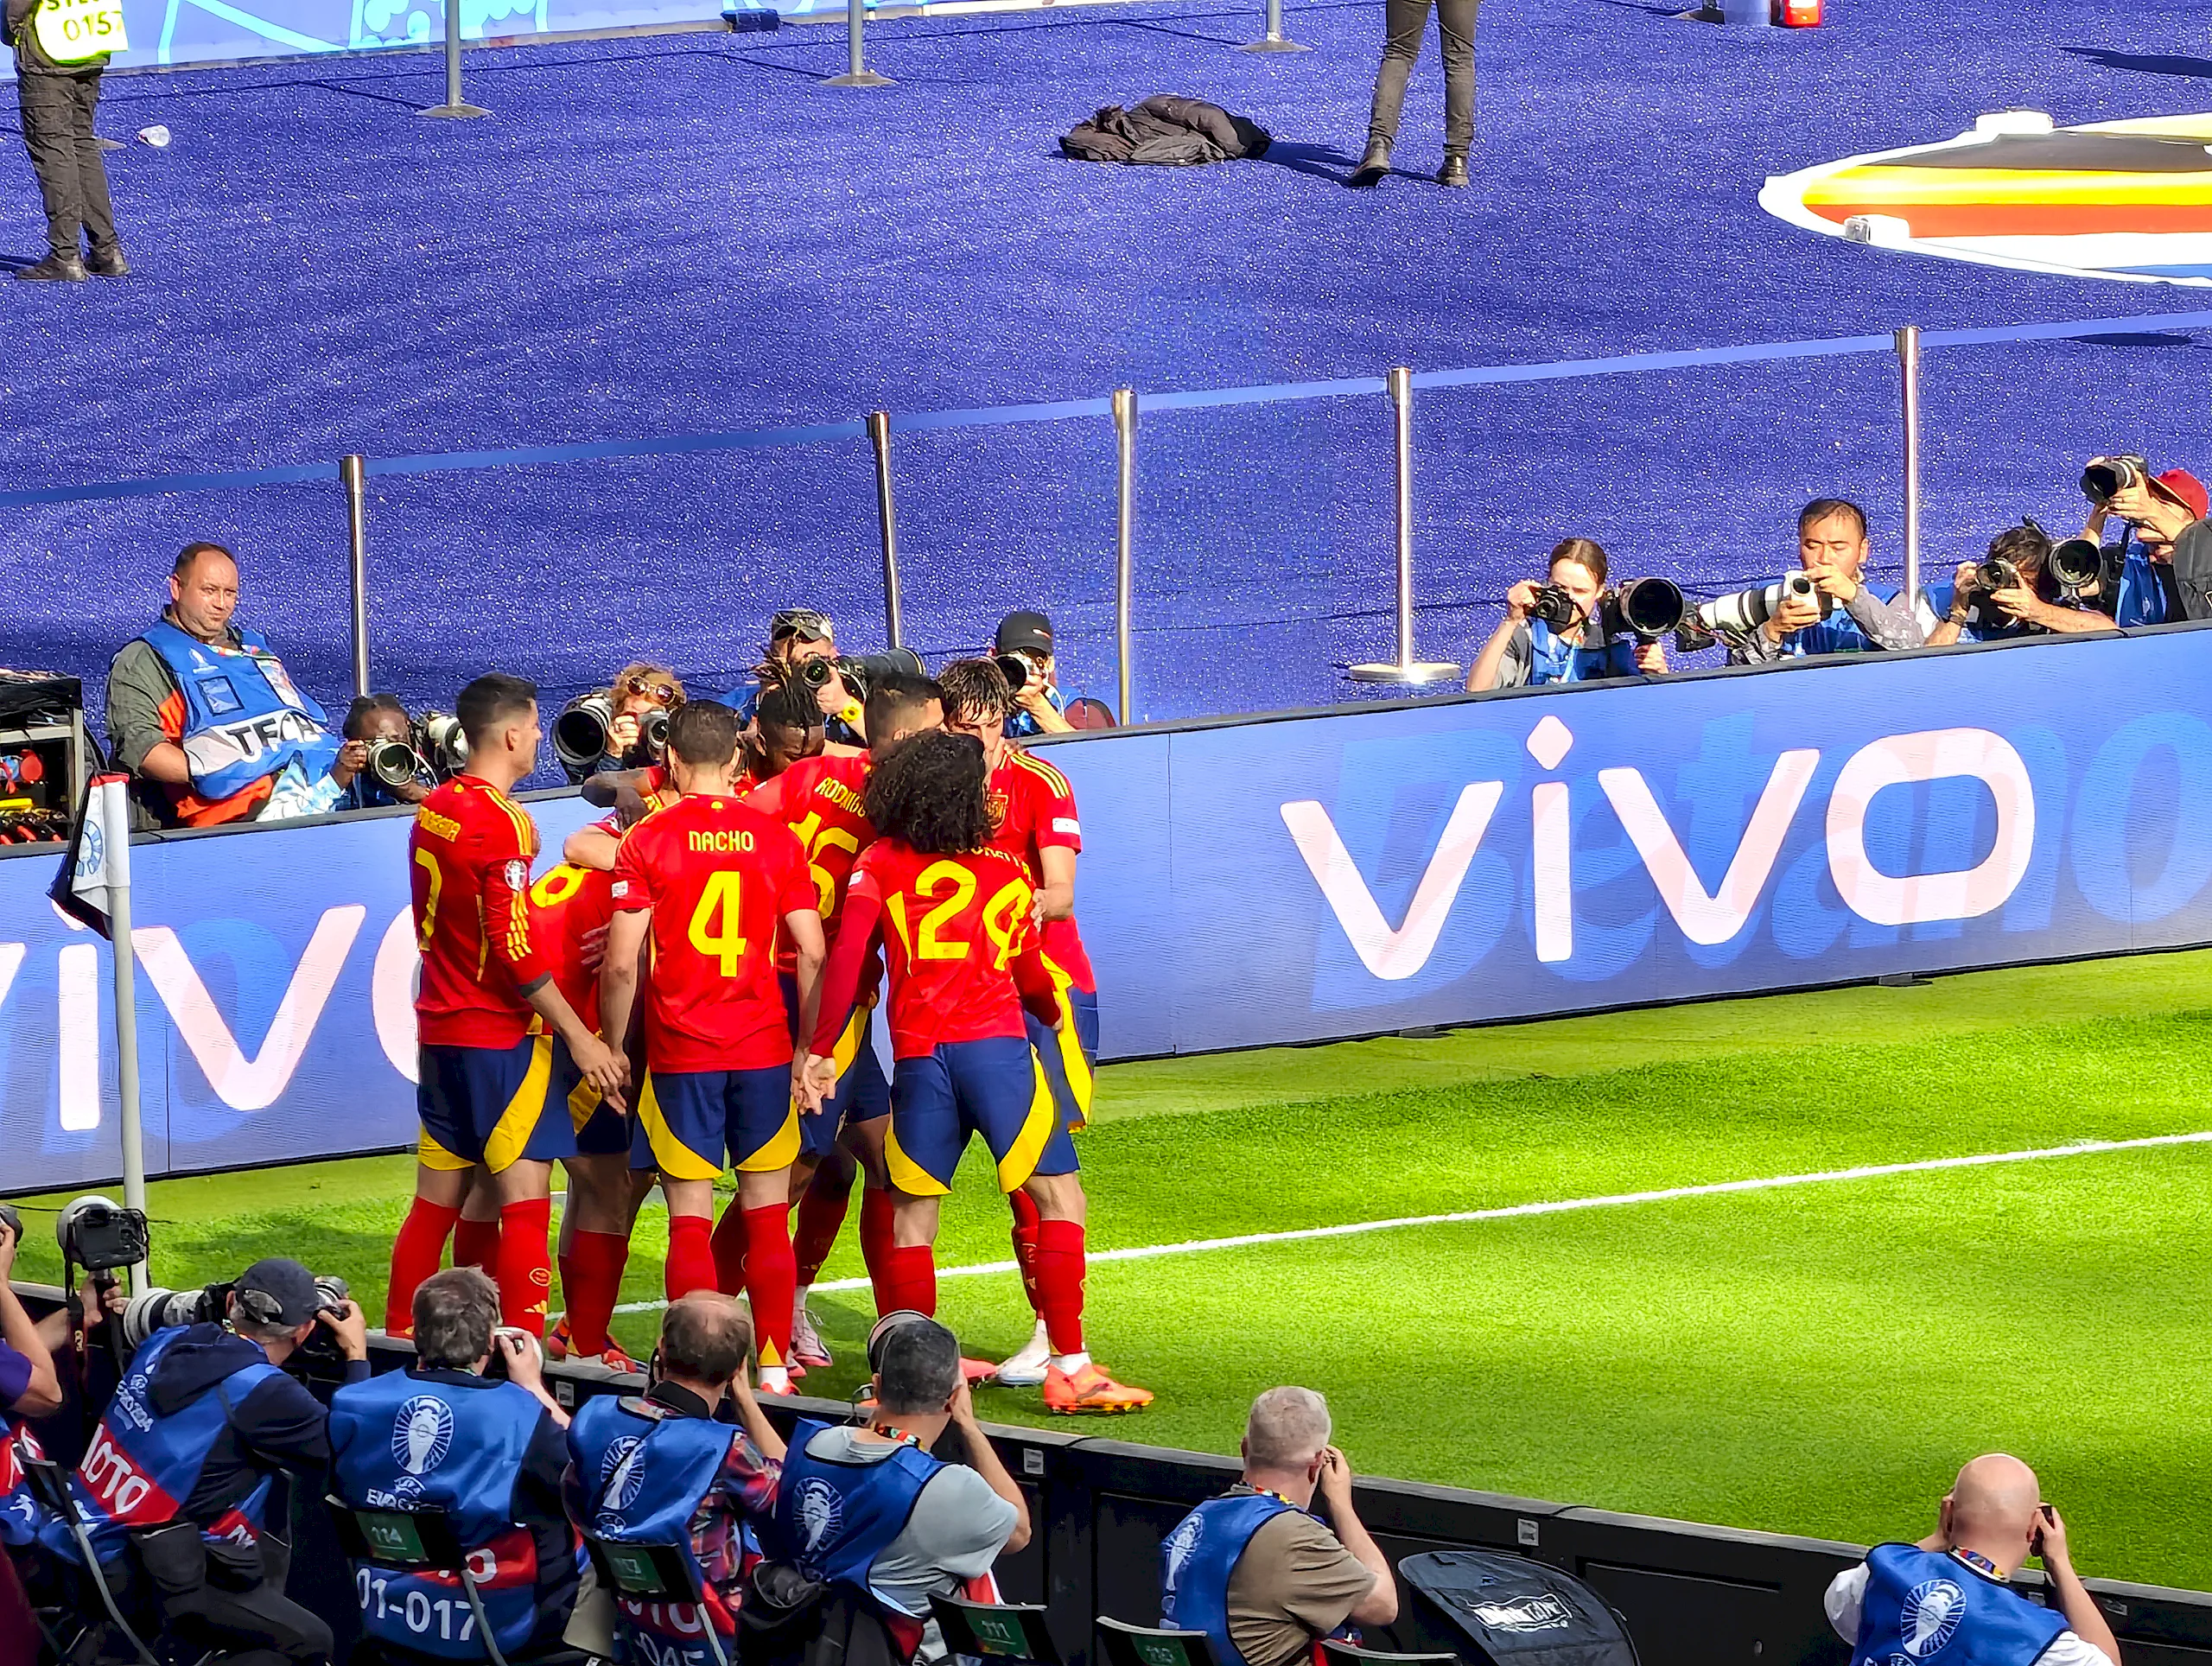 vivo tự hào là Smartphone chính thức của UEFA EURO 2024